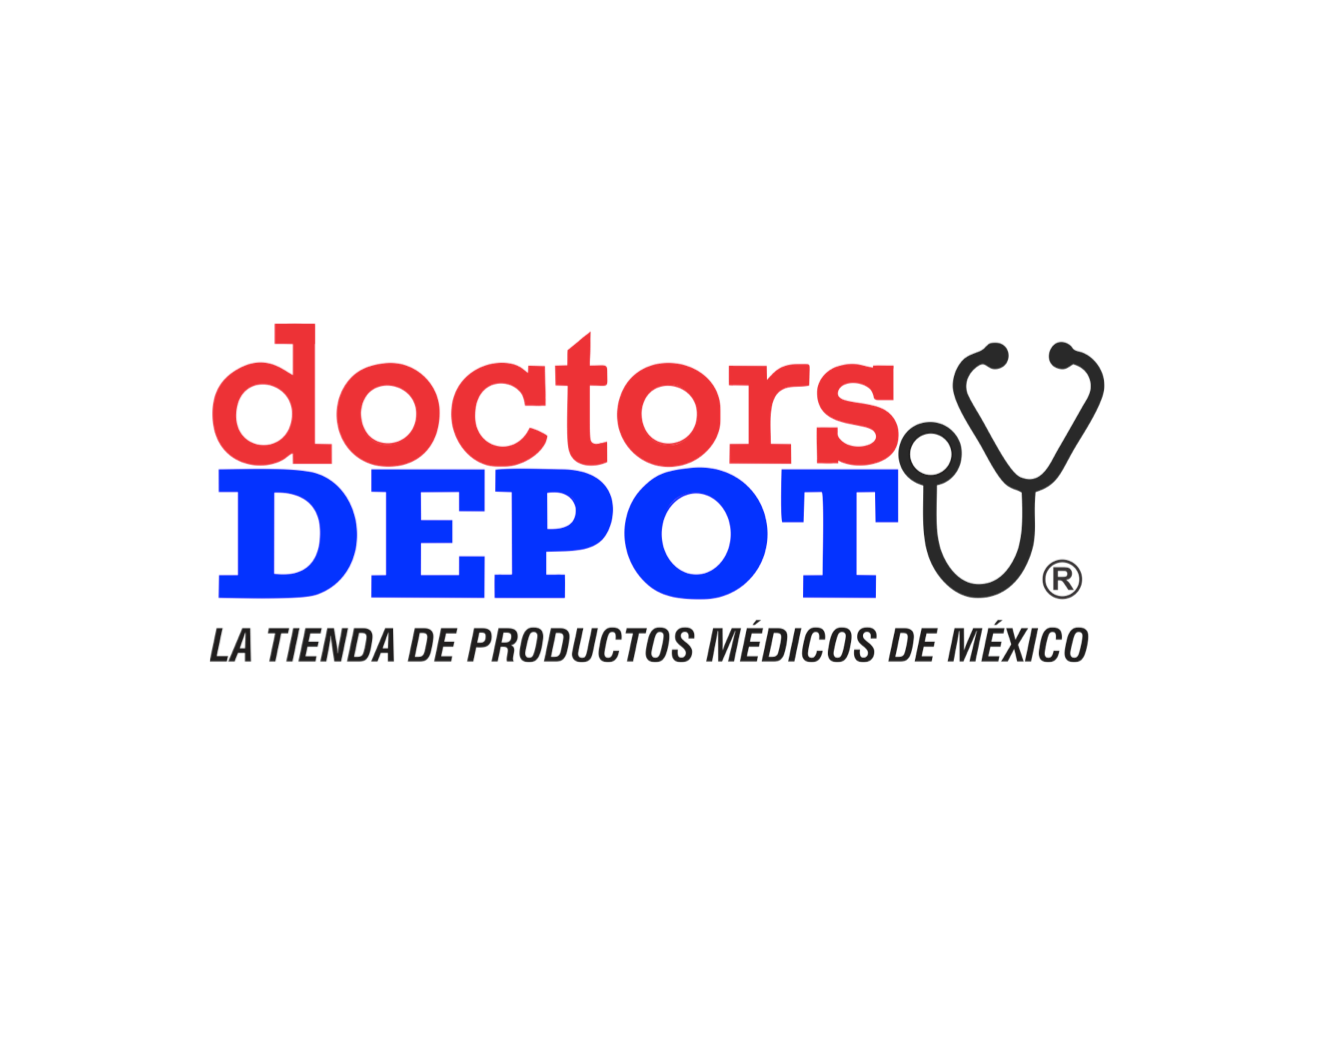 DOCTORS-DEPOT